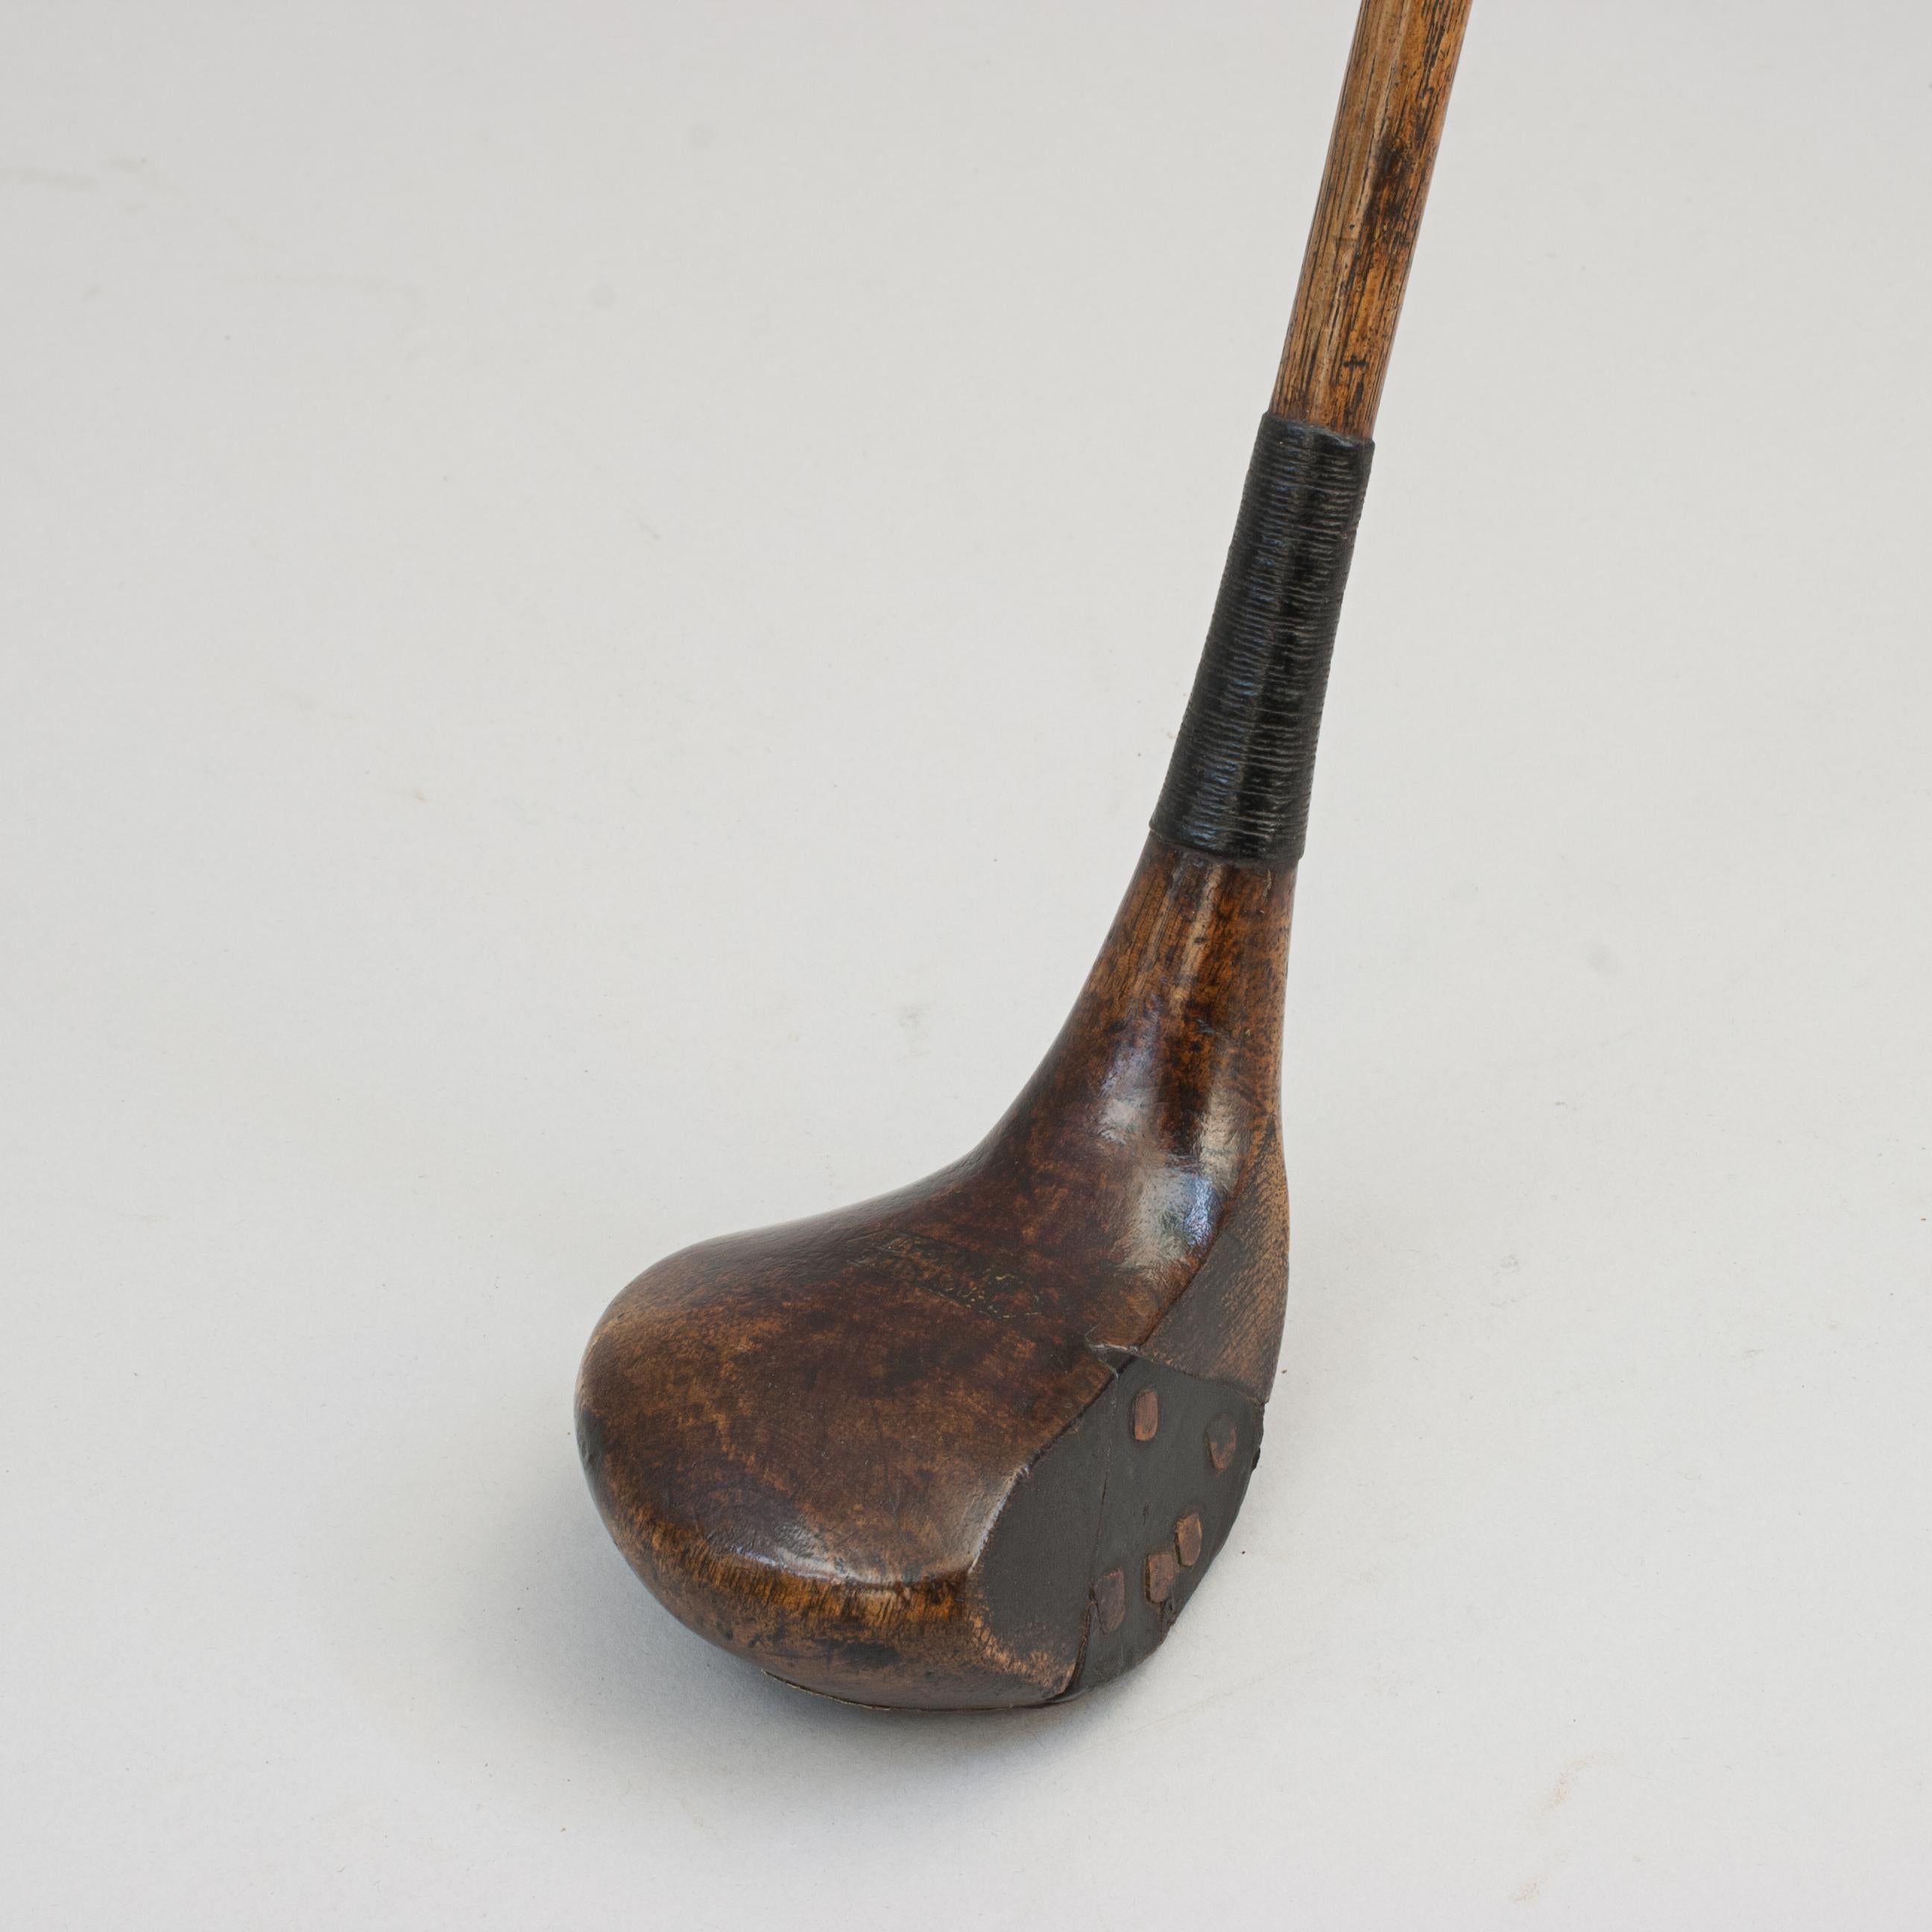 Antique Golf Club, Brassie (Fairway Holz).
Persimmon Head Socket Head Brassie/Löffel mit Hickorystiel und einem Ledergriff. Der Kopf ist möglicherweise mit dem Stempel 